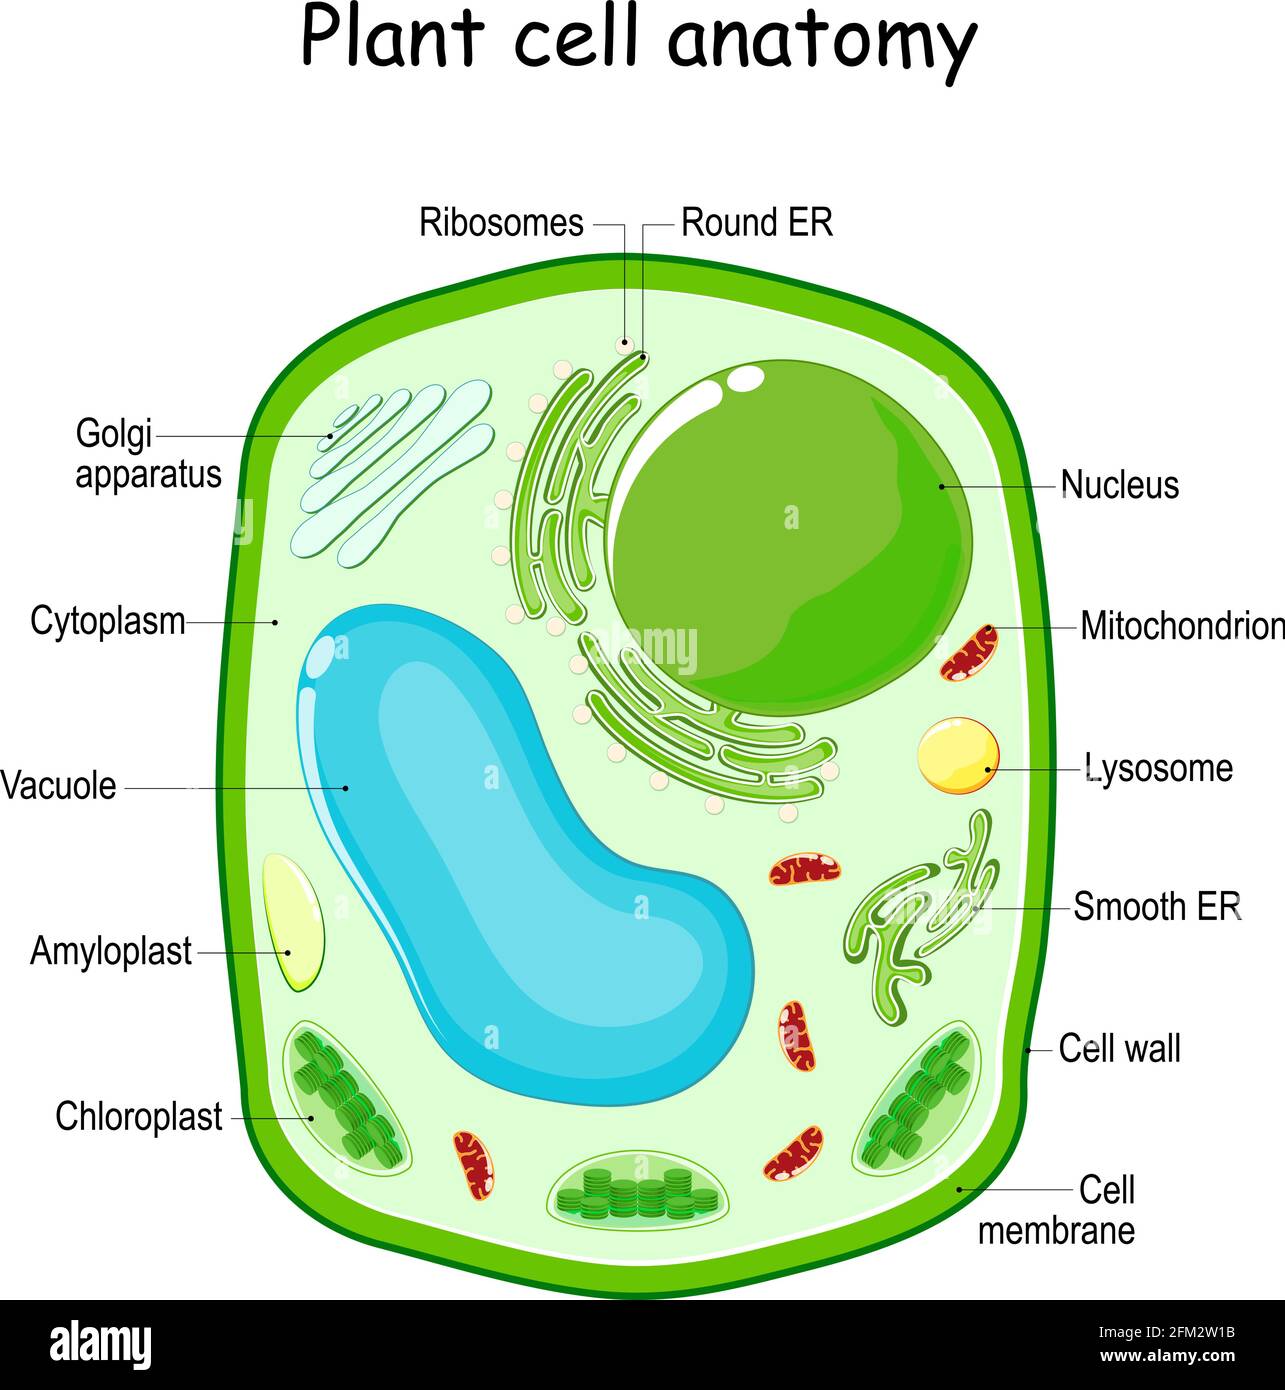 Structure des cellules végétales. Diagramme vectoriel. Anatomie d'une cellule biologique avec des parties étiquetées. Coupe transversale d'une cellule végétale. Illustration pour l'éducation Illustration de Vecteur